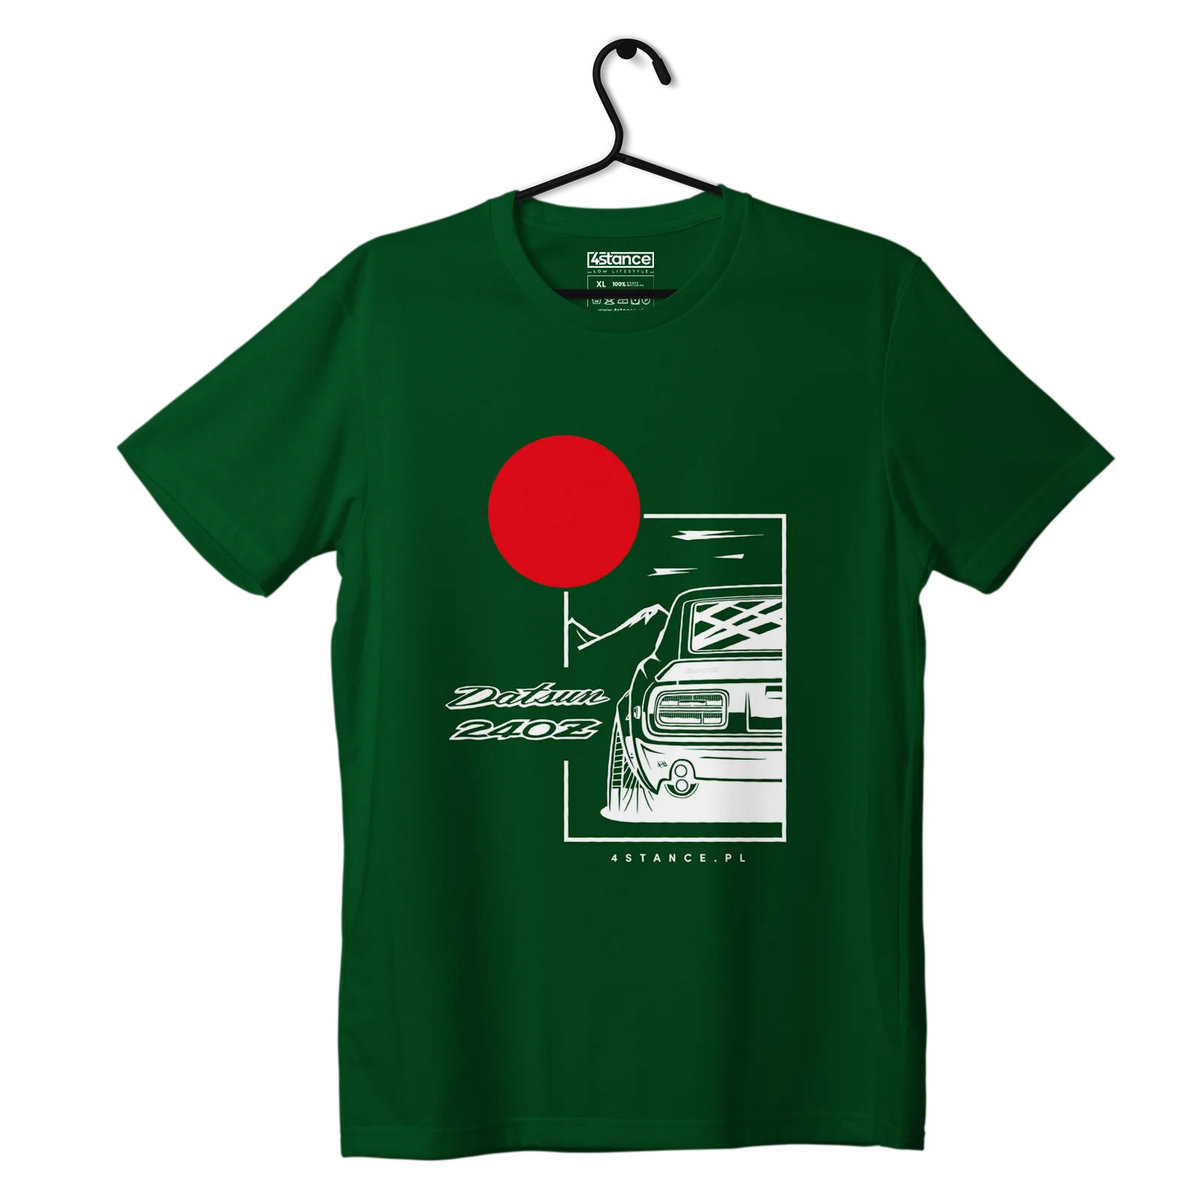 Zdjęcia - Odzież motocyklowa Datsun T-shirt koszulka  240Z zielona-S 